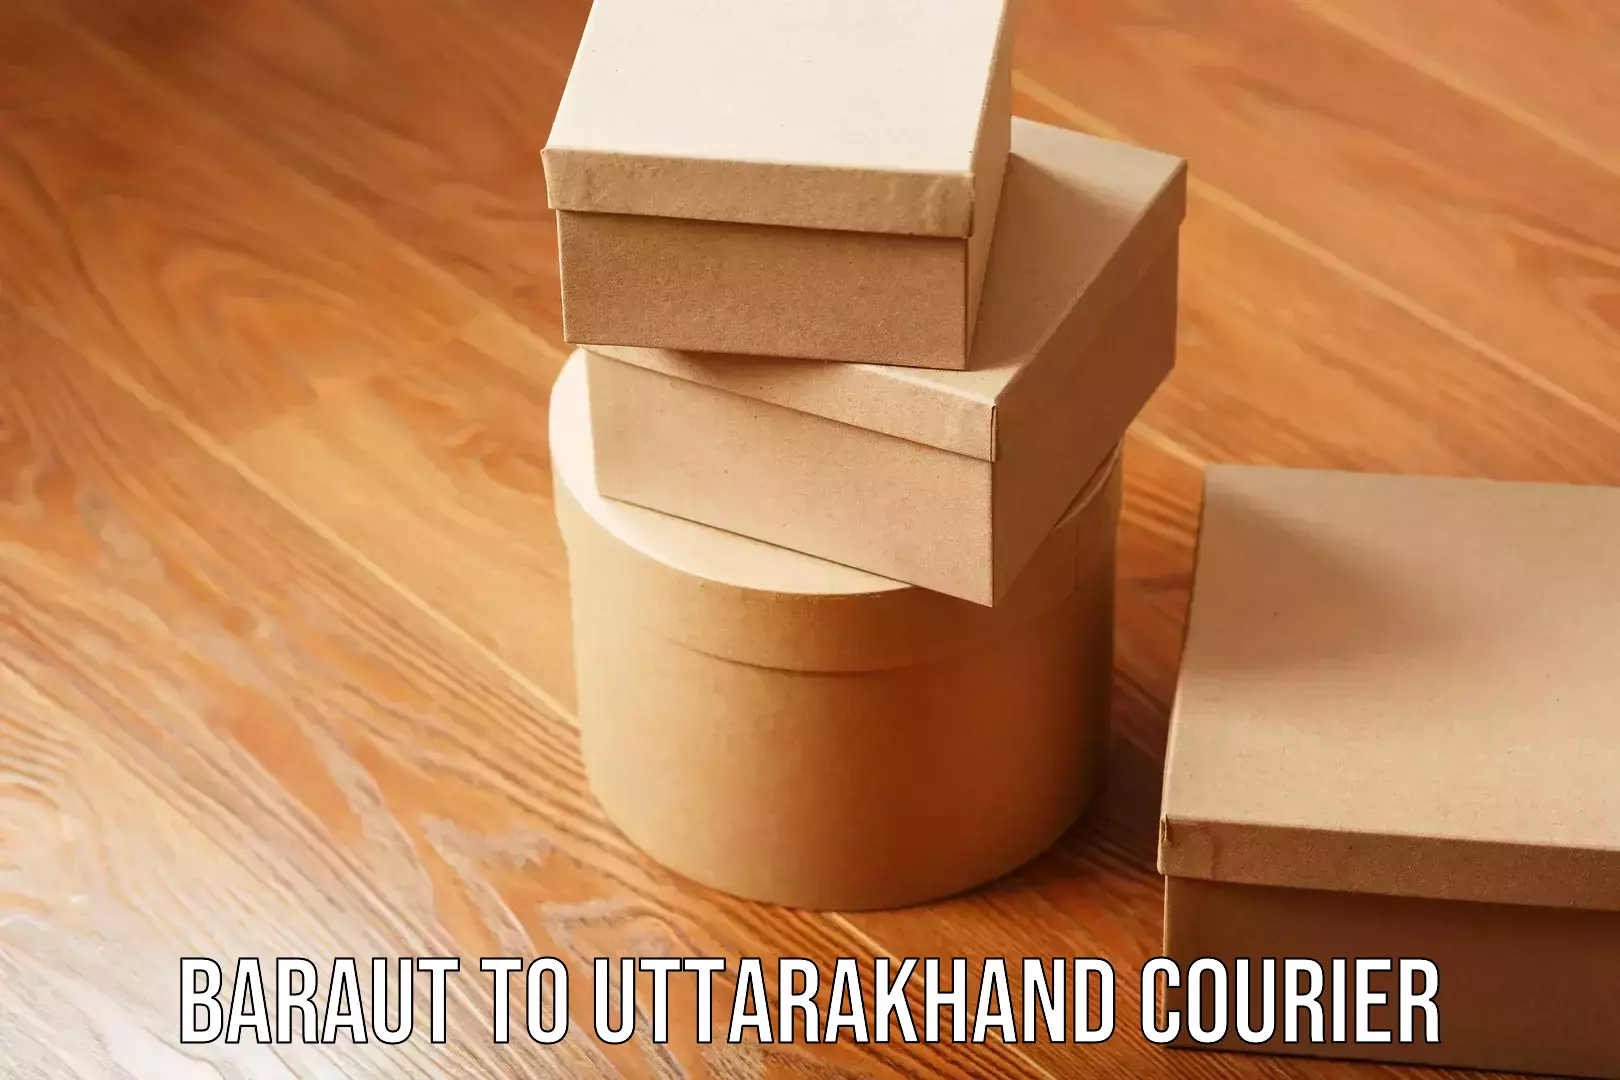 Business shipping needs Baraut to Uttarakhand